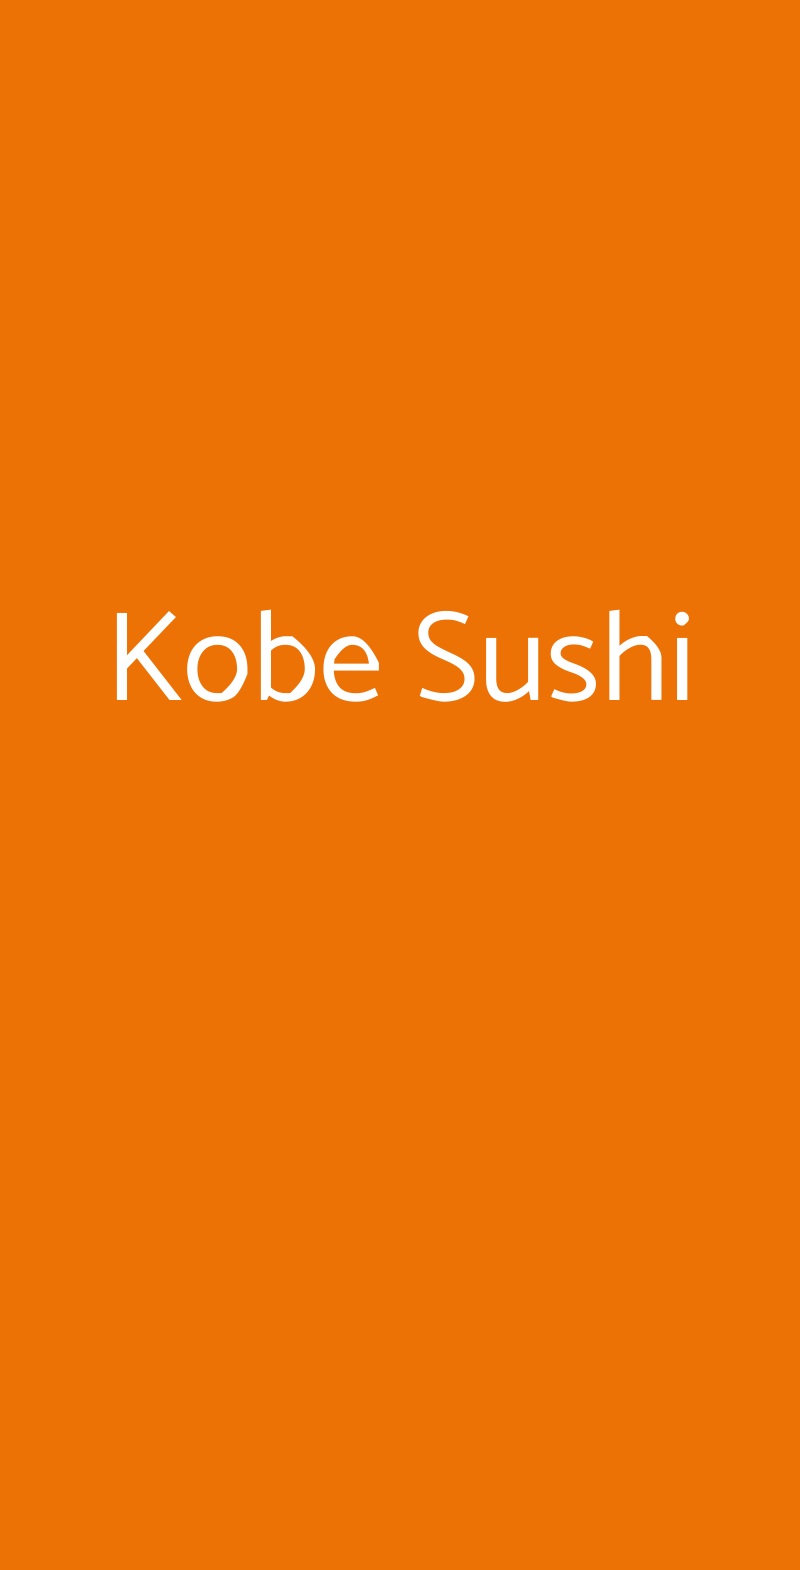 Kobe Sushi Milano menù 1 pagina